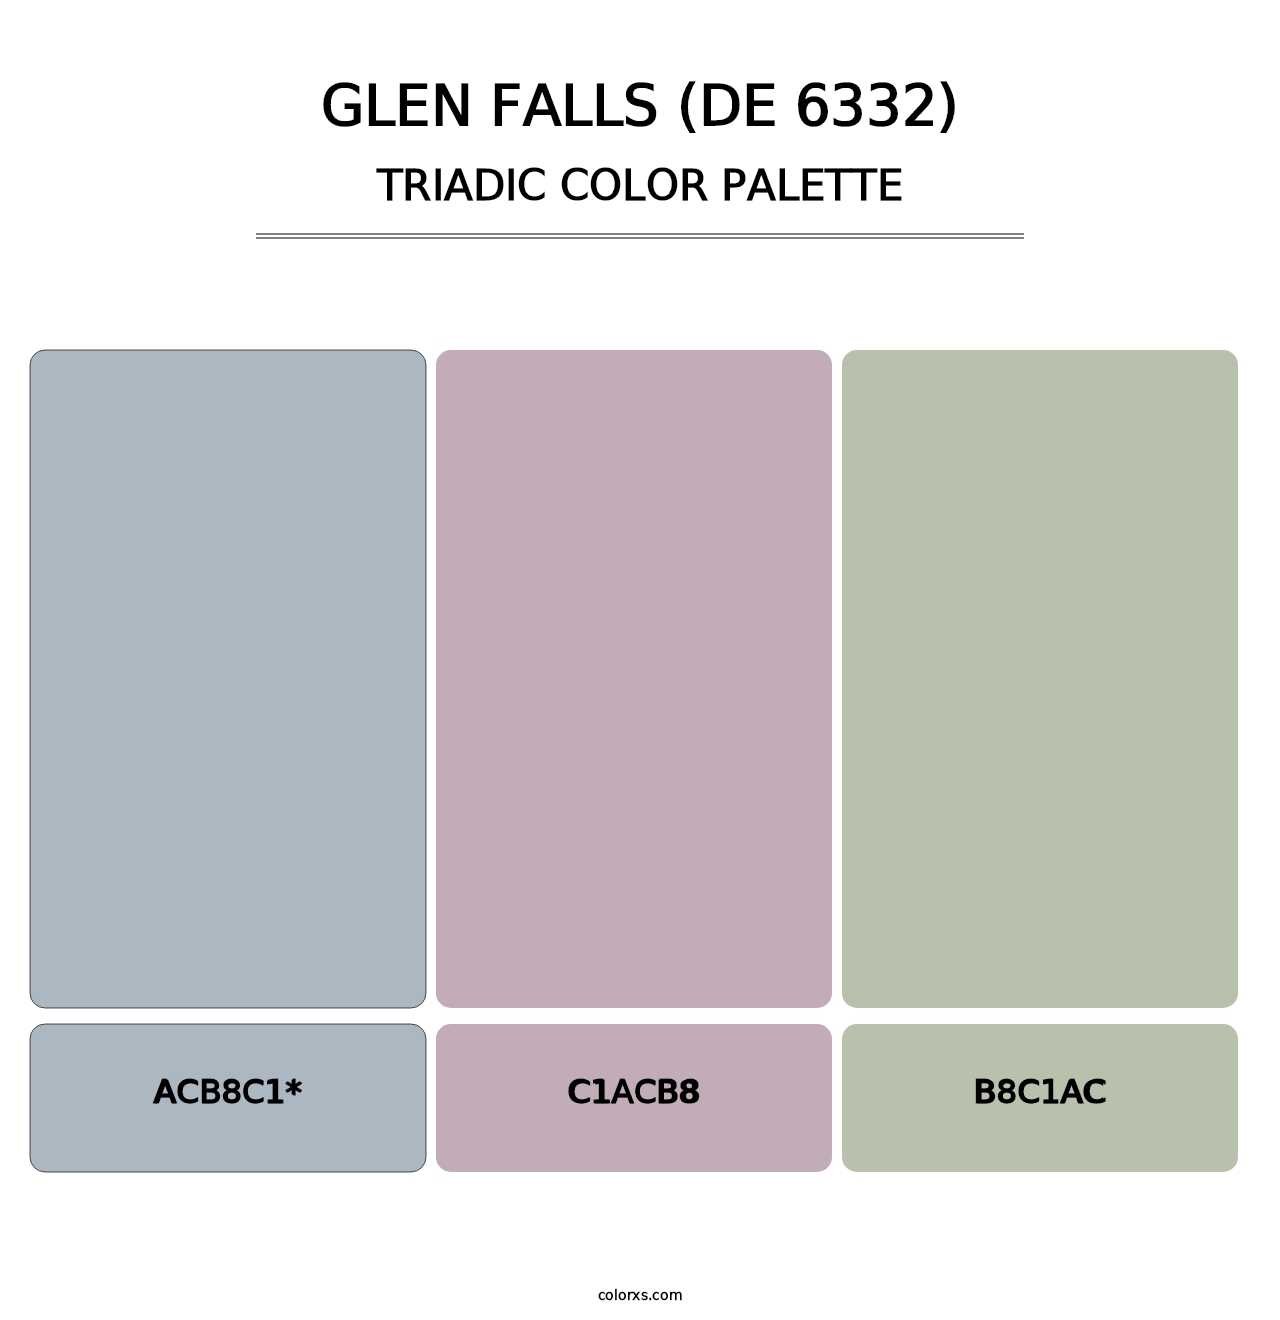 Glen Falls (DE 6332) - Triadic Color Palette